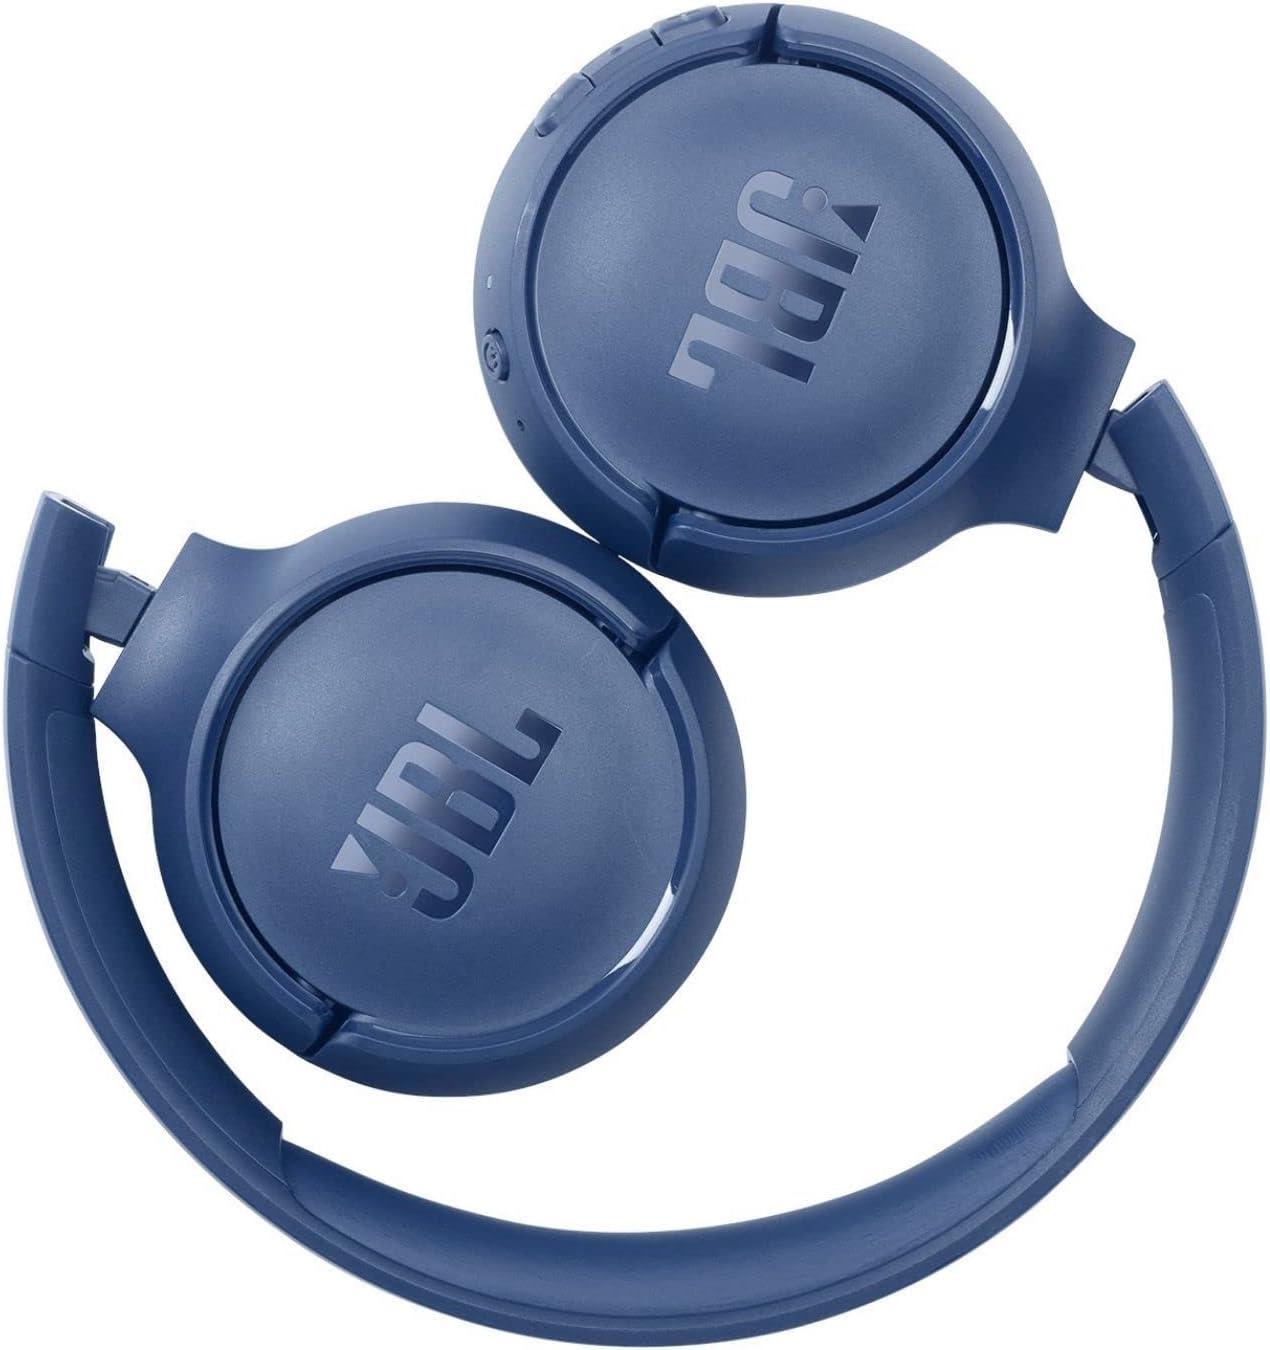 JBL Tune 510BT: Wireless On-Ear Headphones - Blue - GameStore.mt | Powered by Flutisat